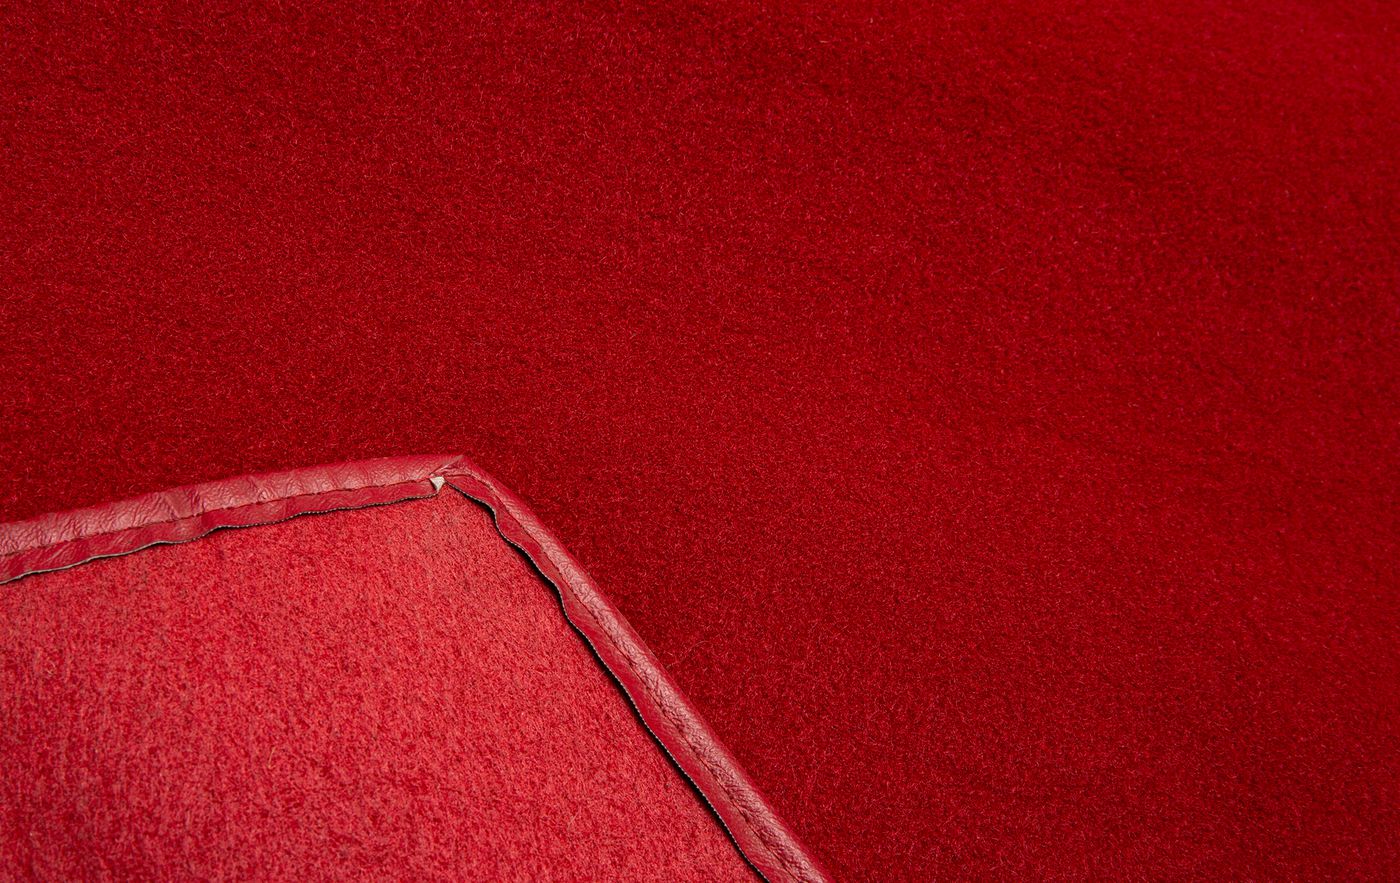 Teppich
Carpet
Tapis
Alfombrilla
tappeto
Carpete